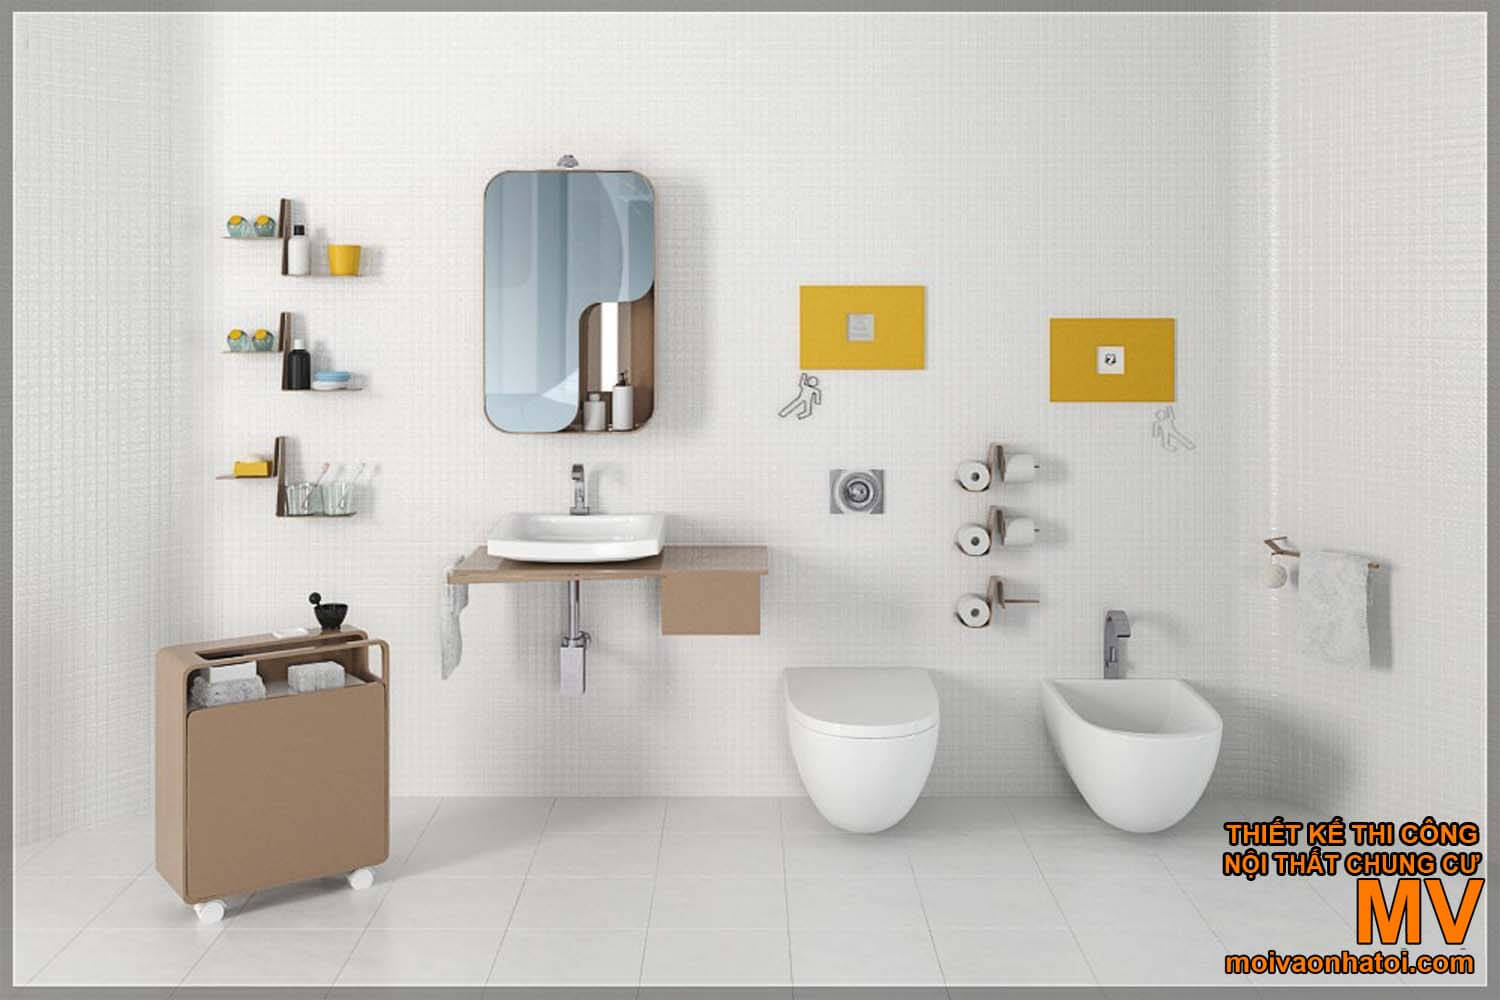 lavar o rosto lavabo, belo design moderno banheiro